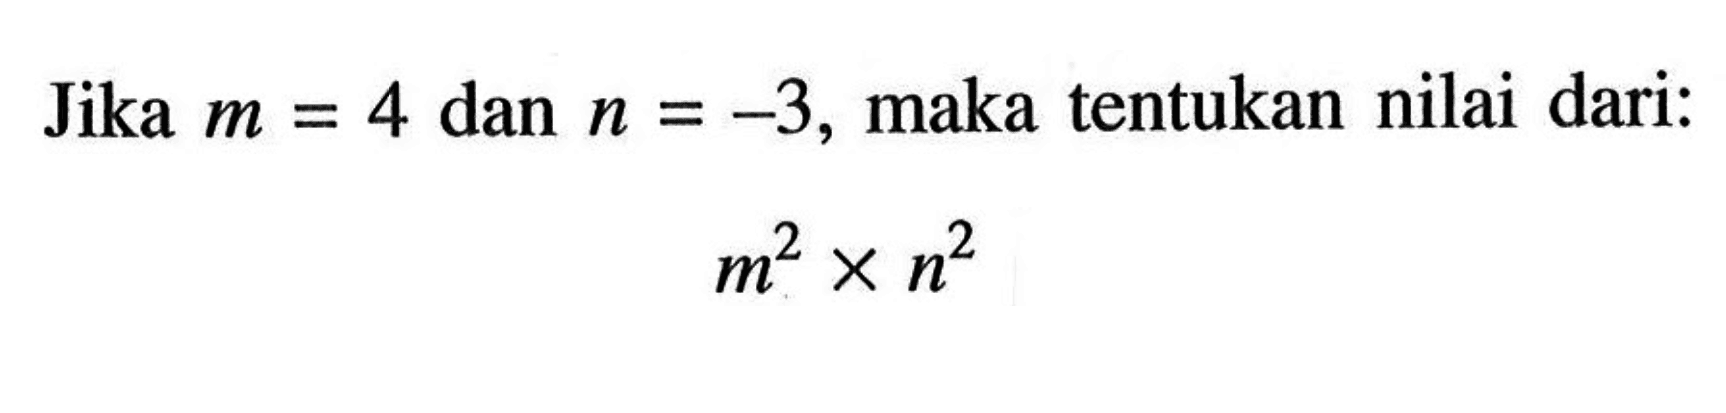 Jika m=4 dan n=-3, maka tentukan nilai dari: m^2xn^2